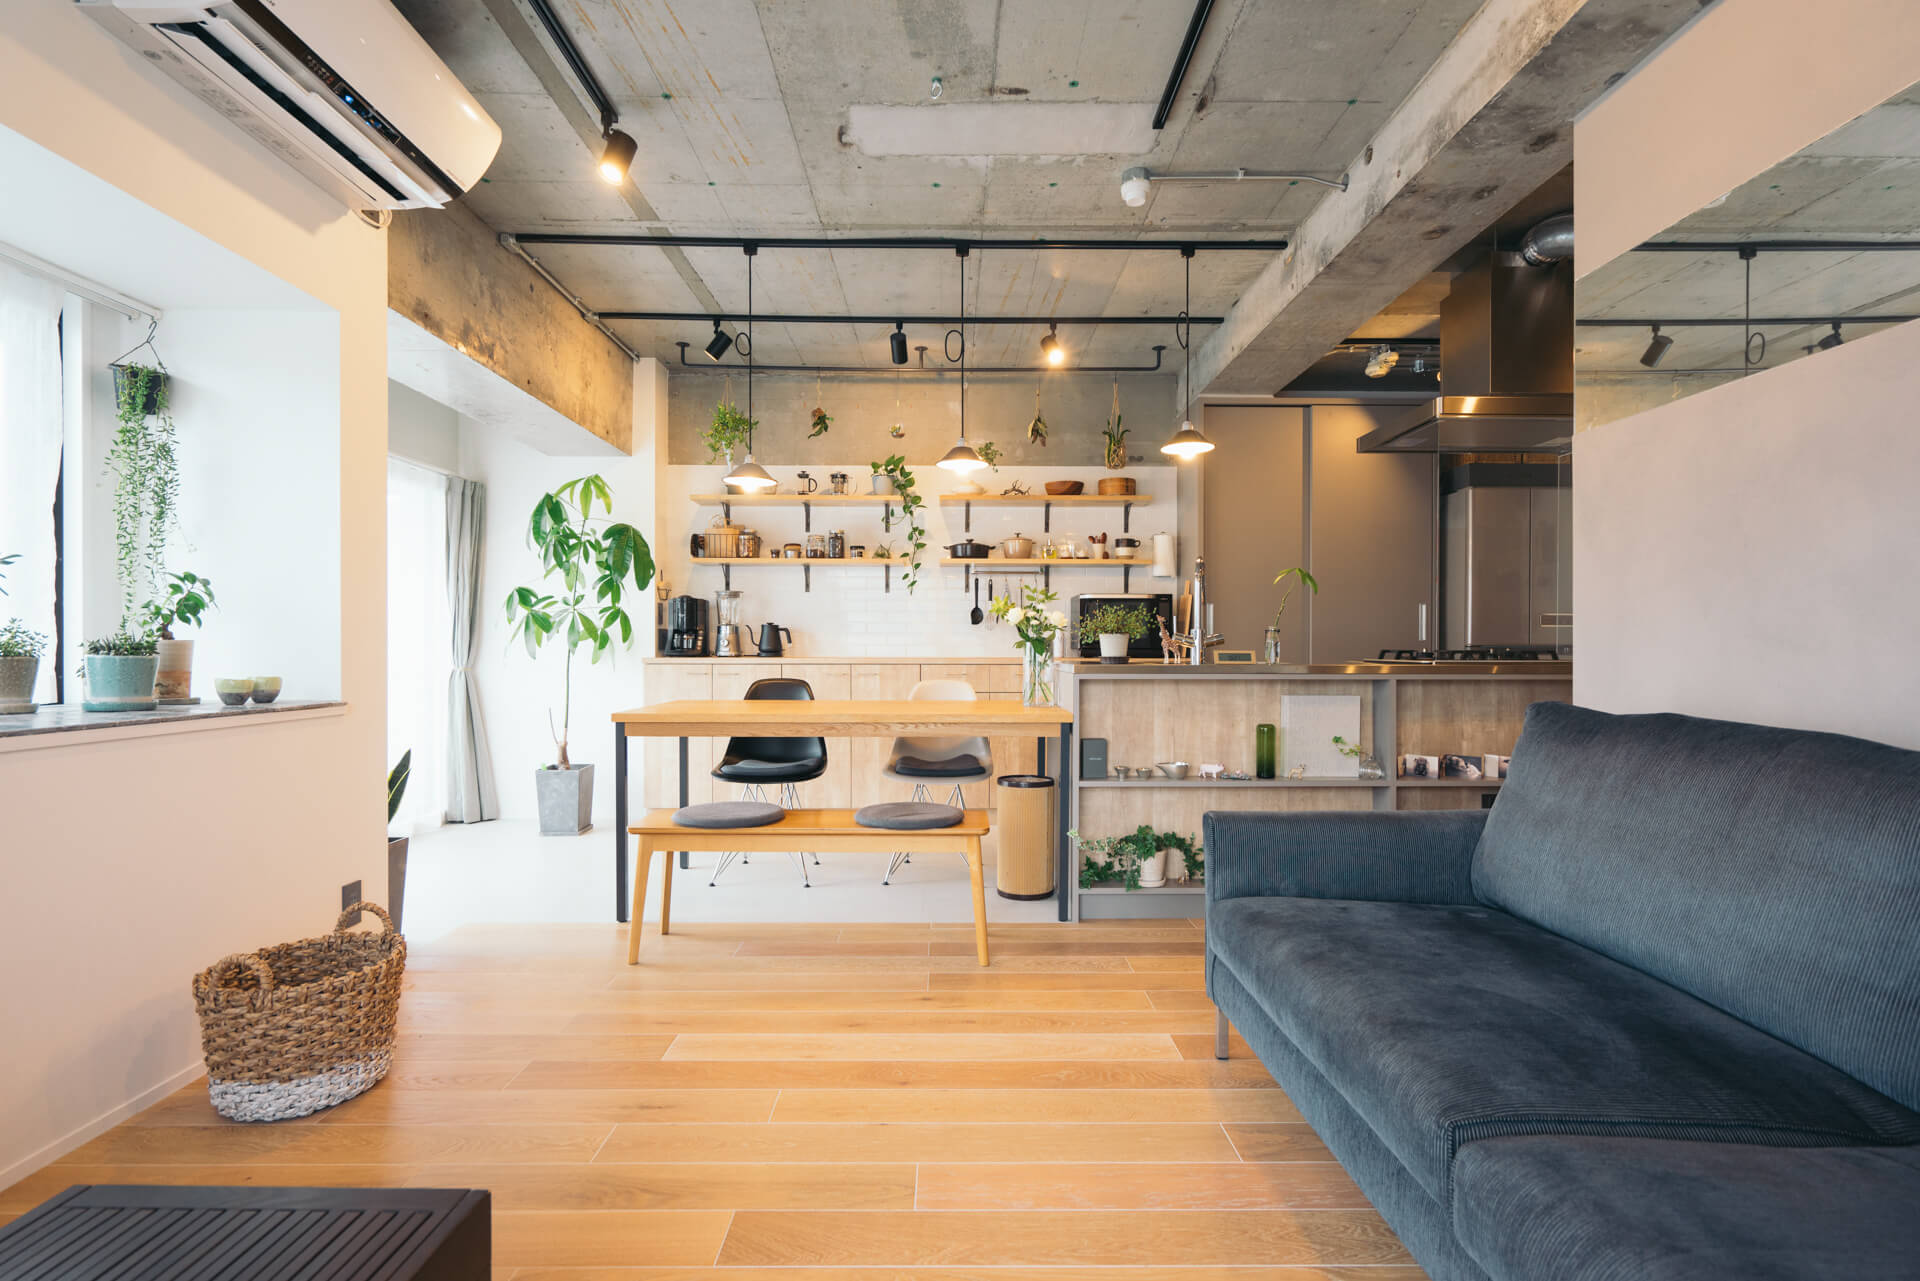 コンクリートとグリーン、無機と有機のものがうまくミックスされた素敵な空間で暮らす方のお部屋。